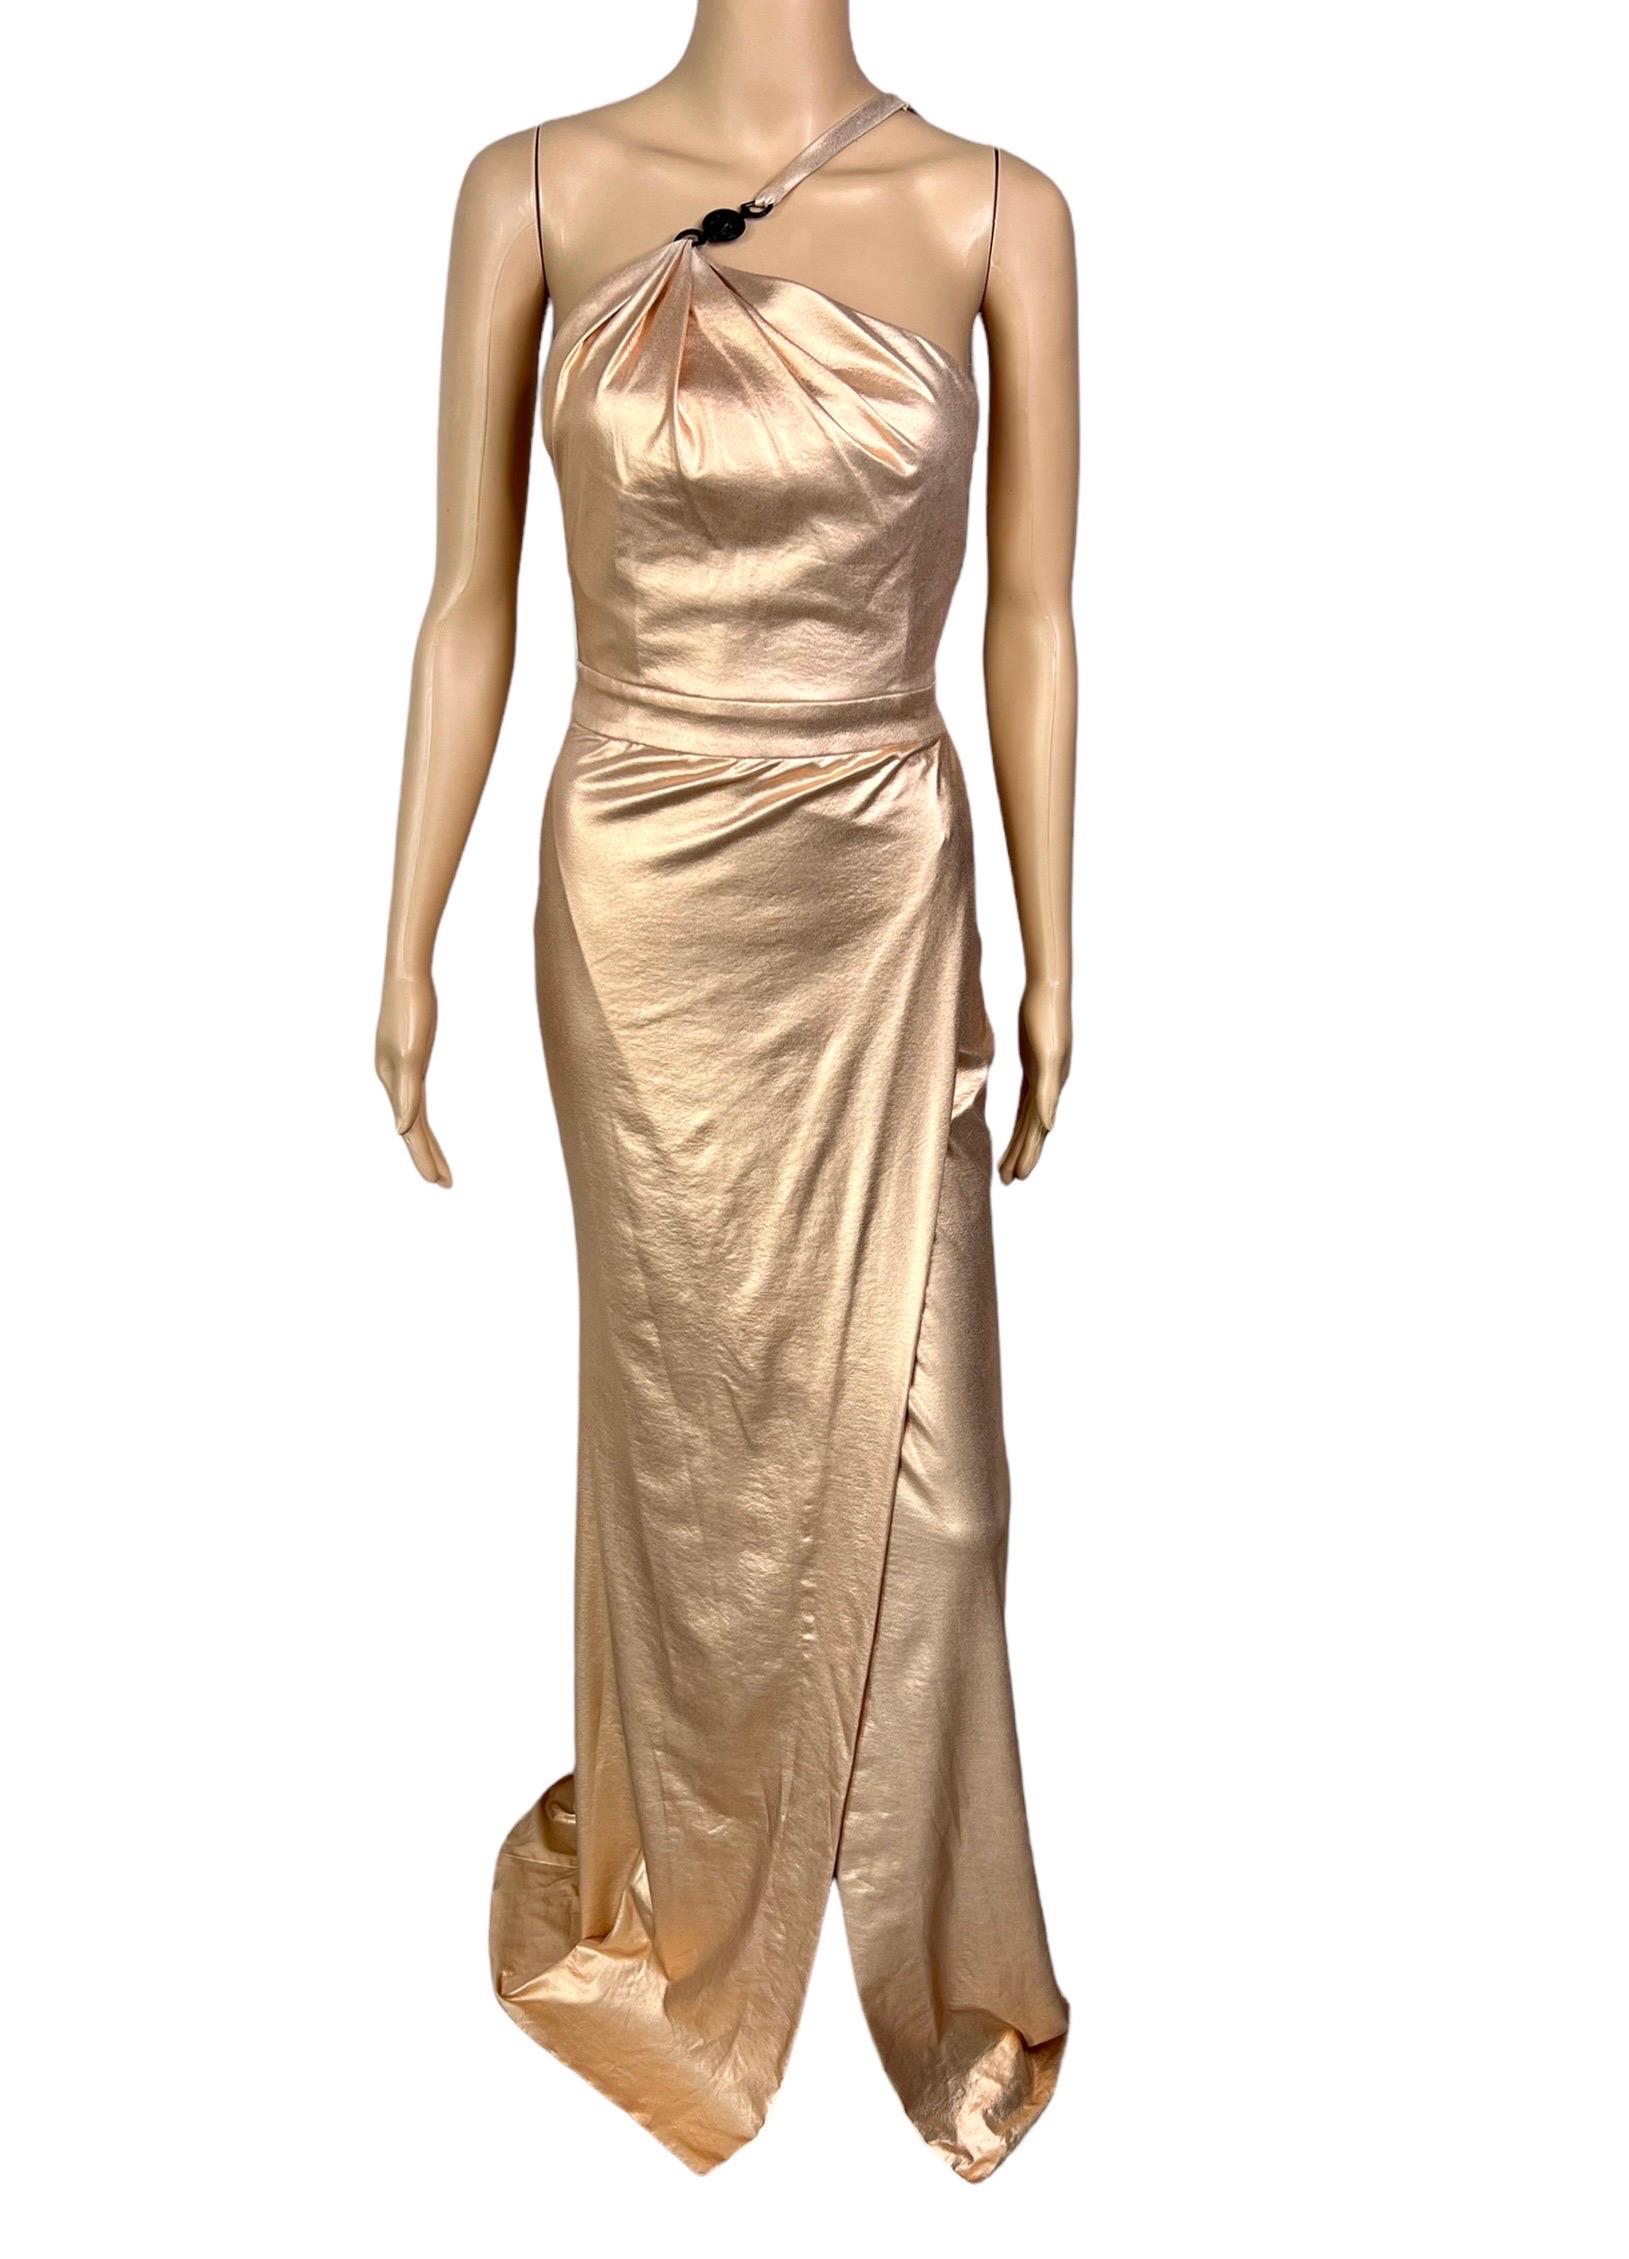 Versace c.2013 Wet Liquid Look Bodycon Metallic Rose Gold Evening Dress Gown For Sale 11